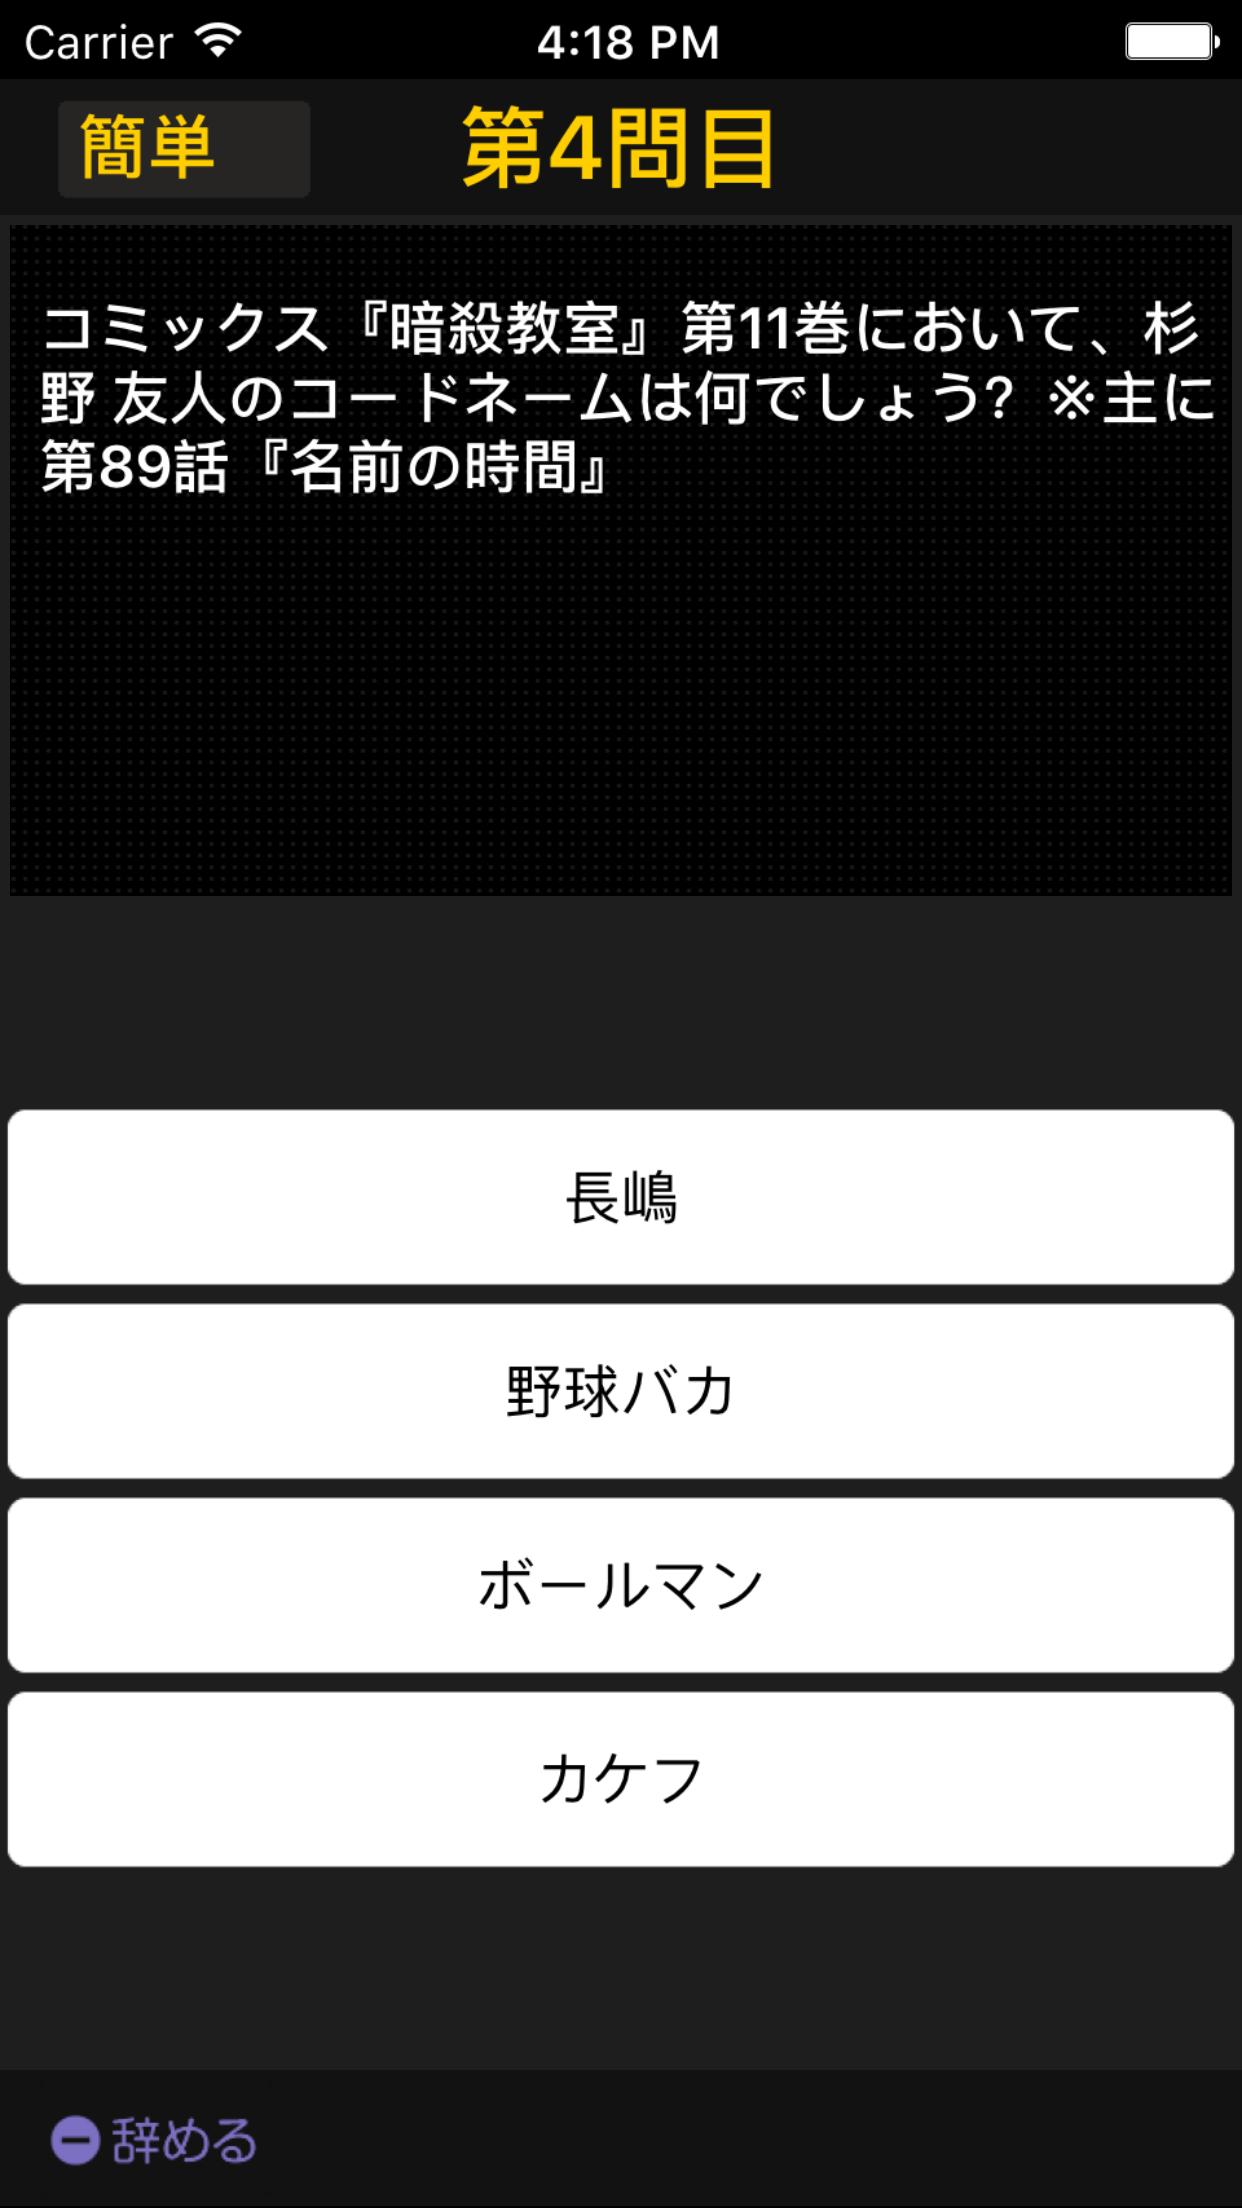 暗殺教室ver 四択クイズ For Android Apk Download